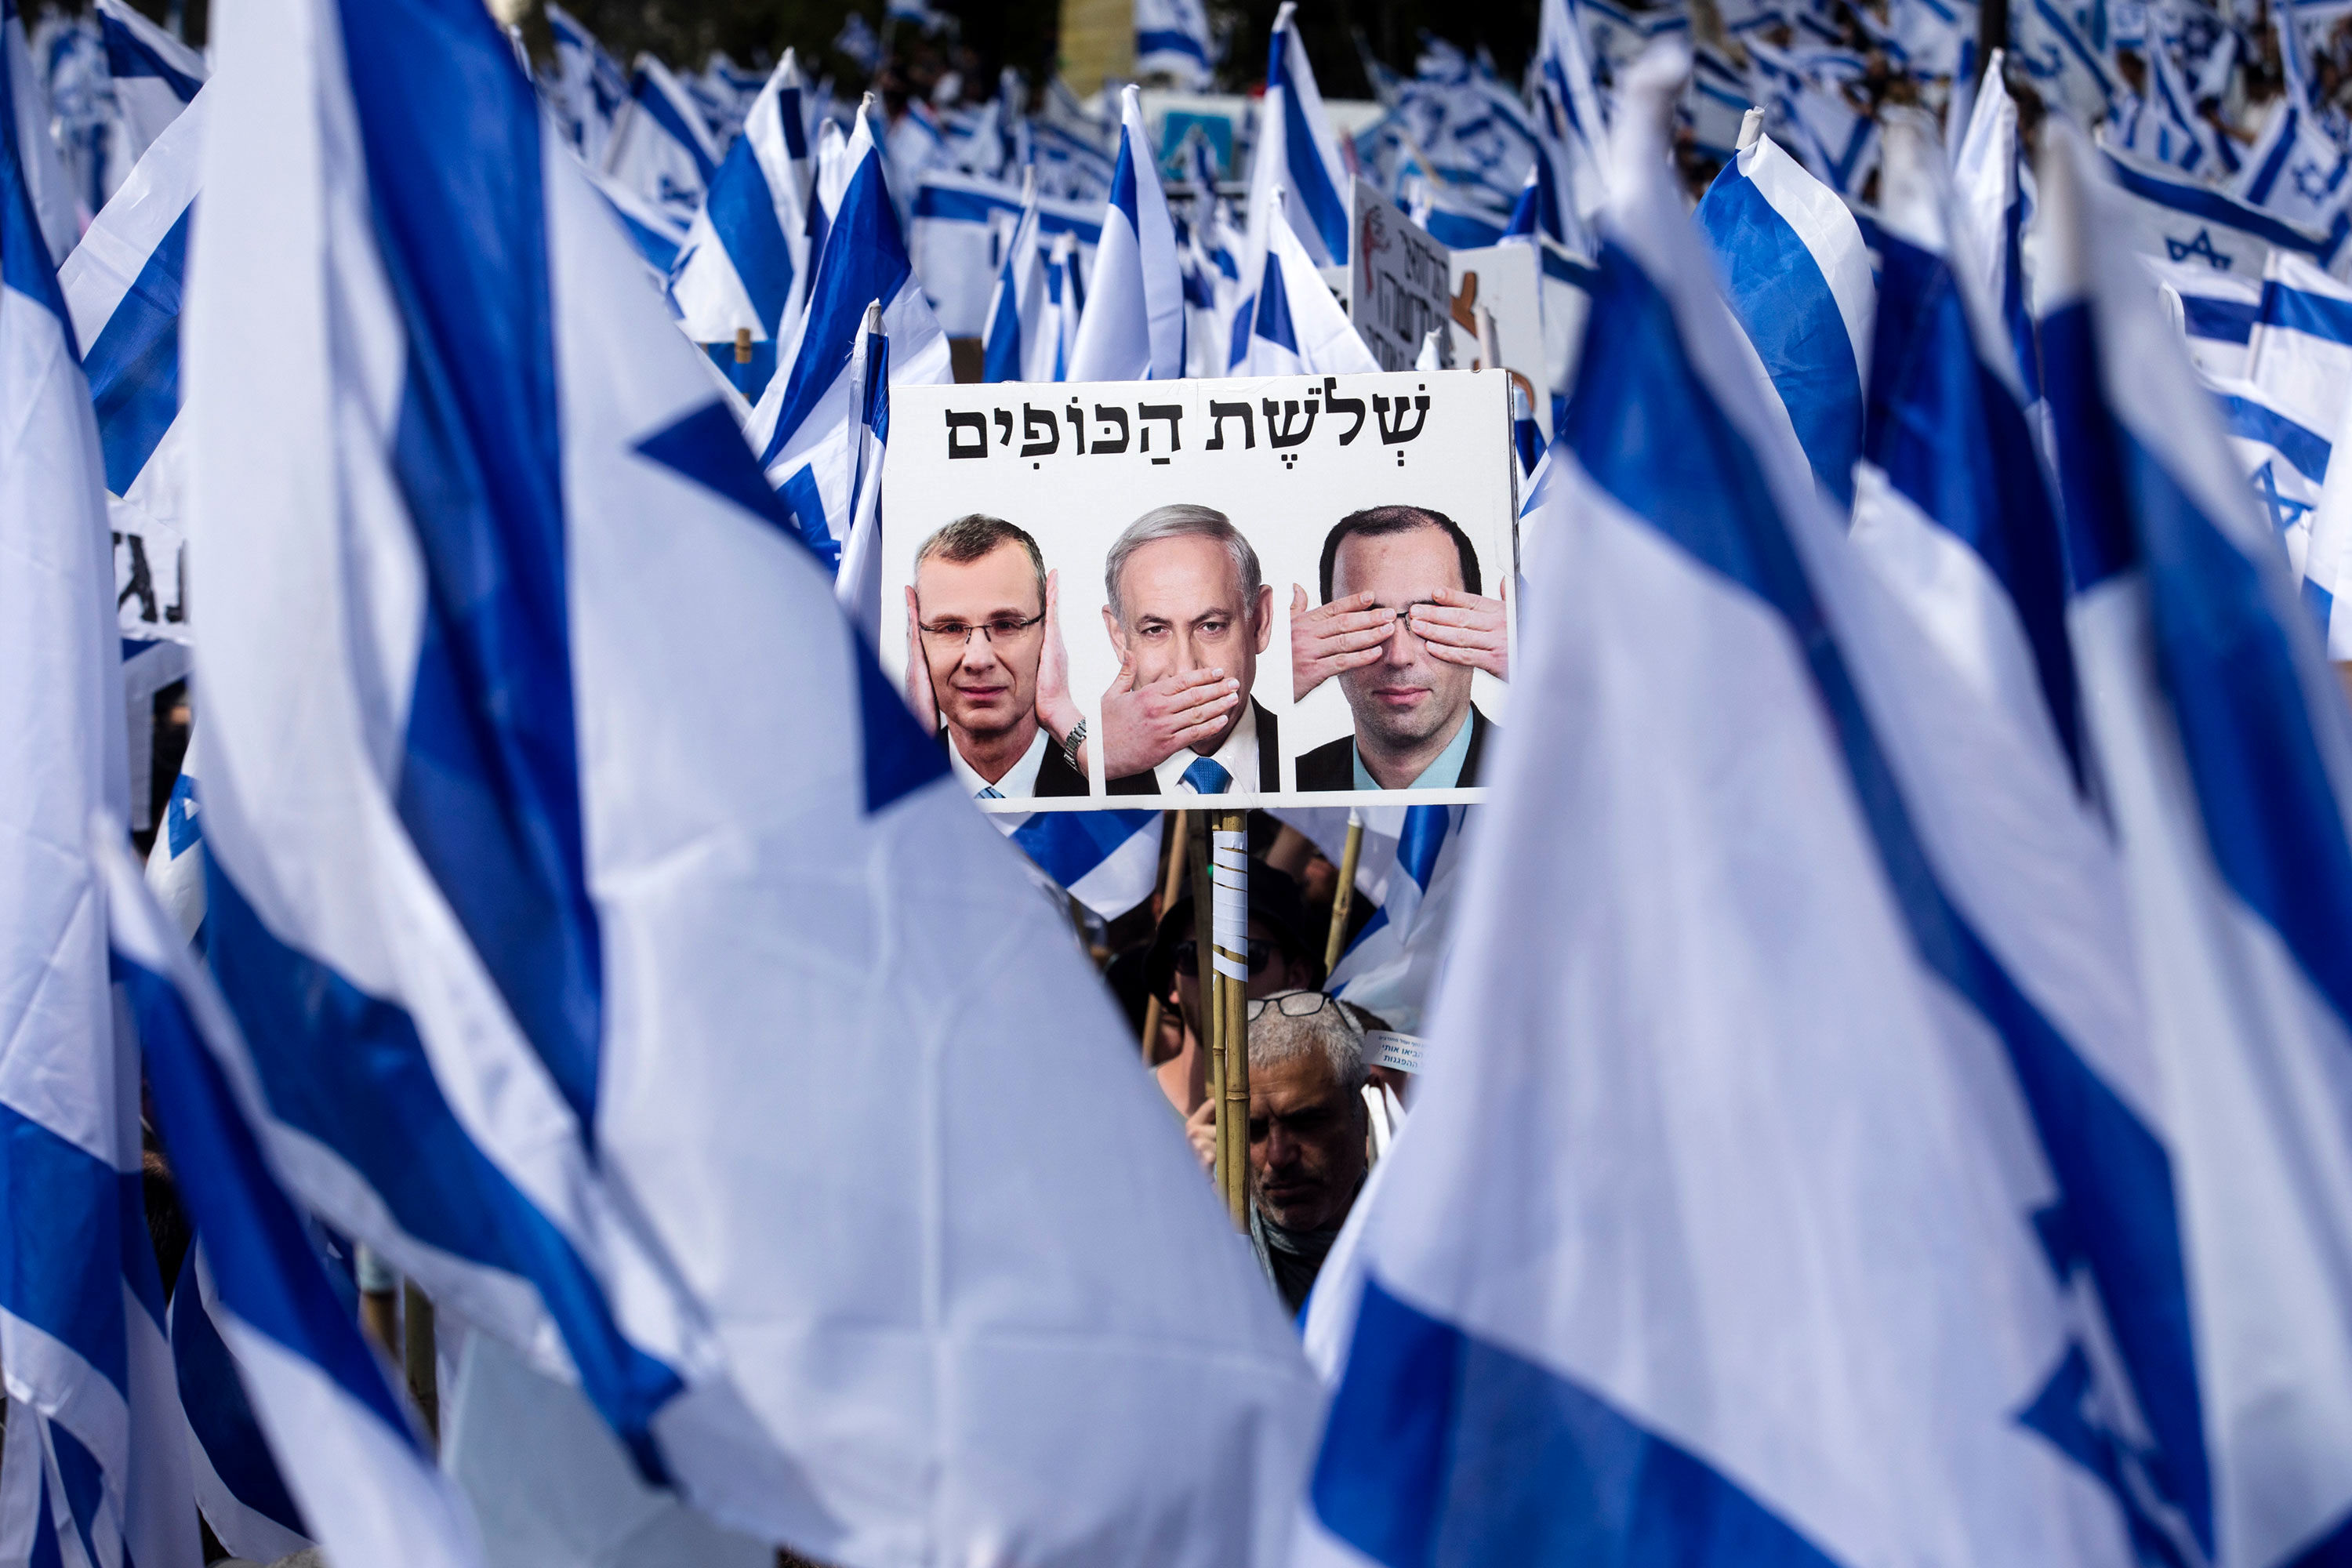  اسرائیل در آستانه یک زلزله بزرگ؟/خط و نشان معترضان برای «بی بی»